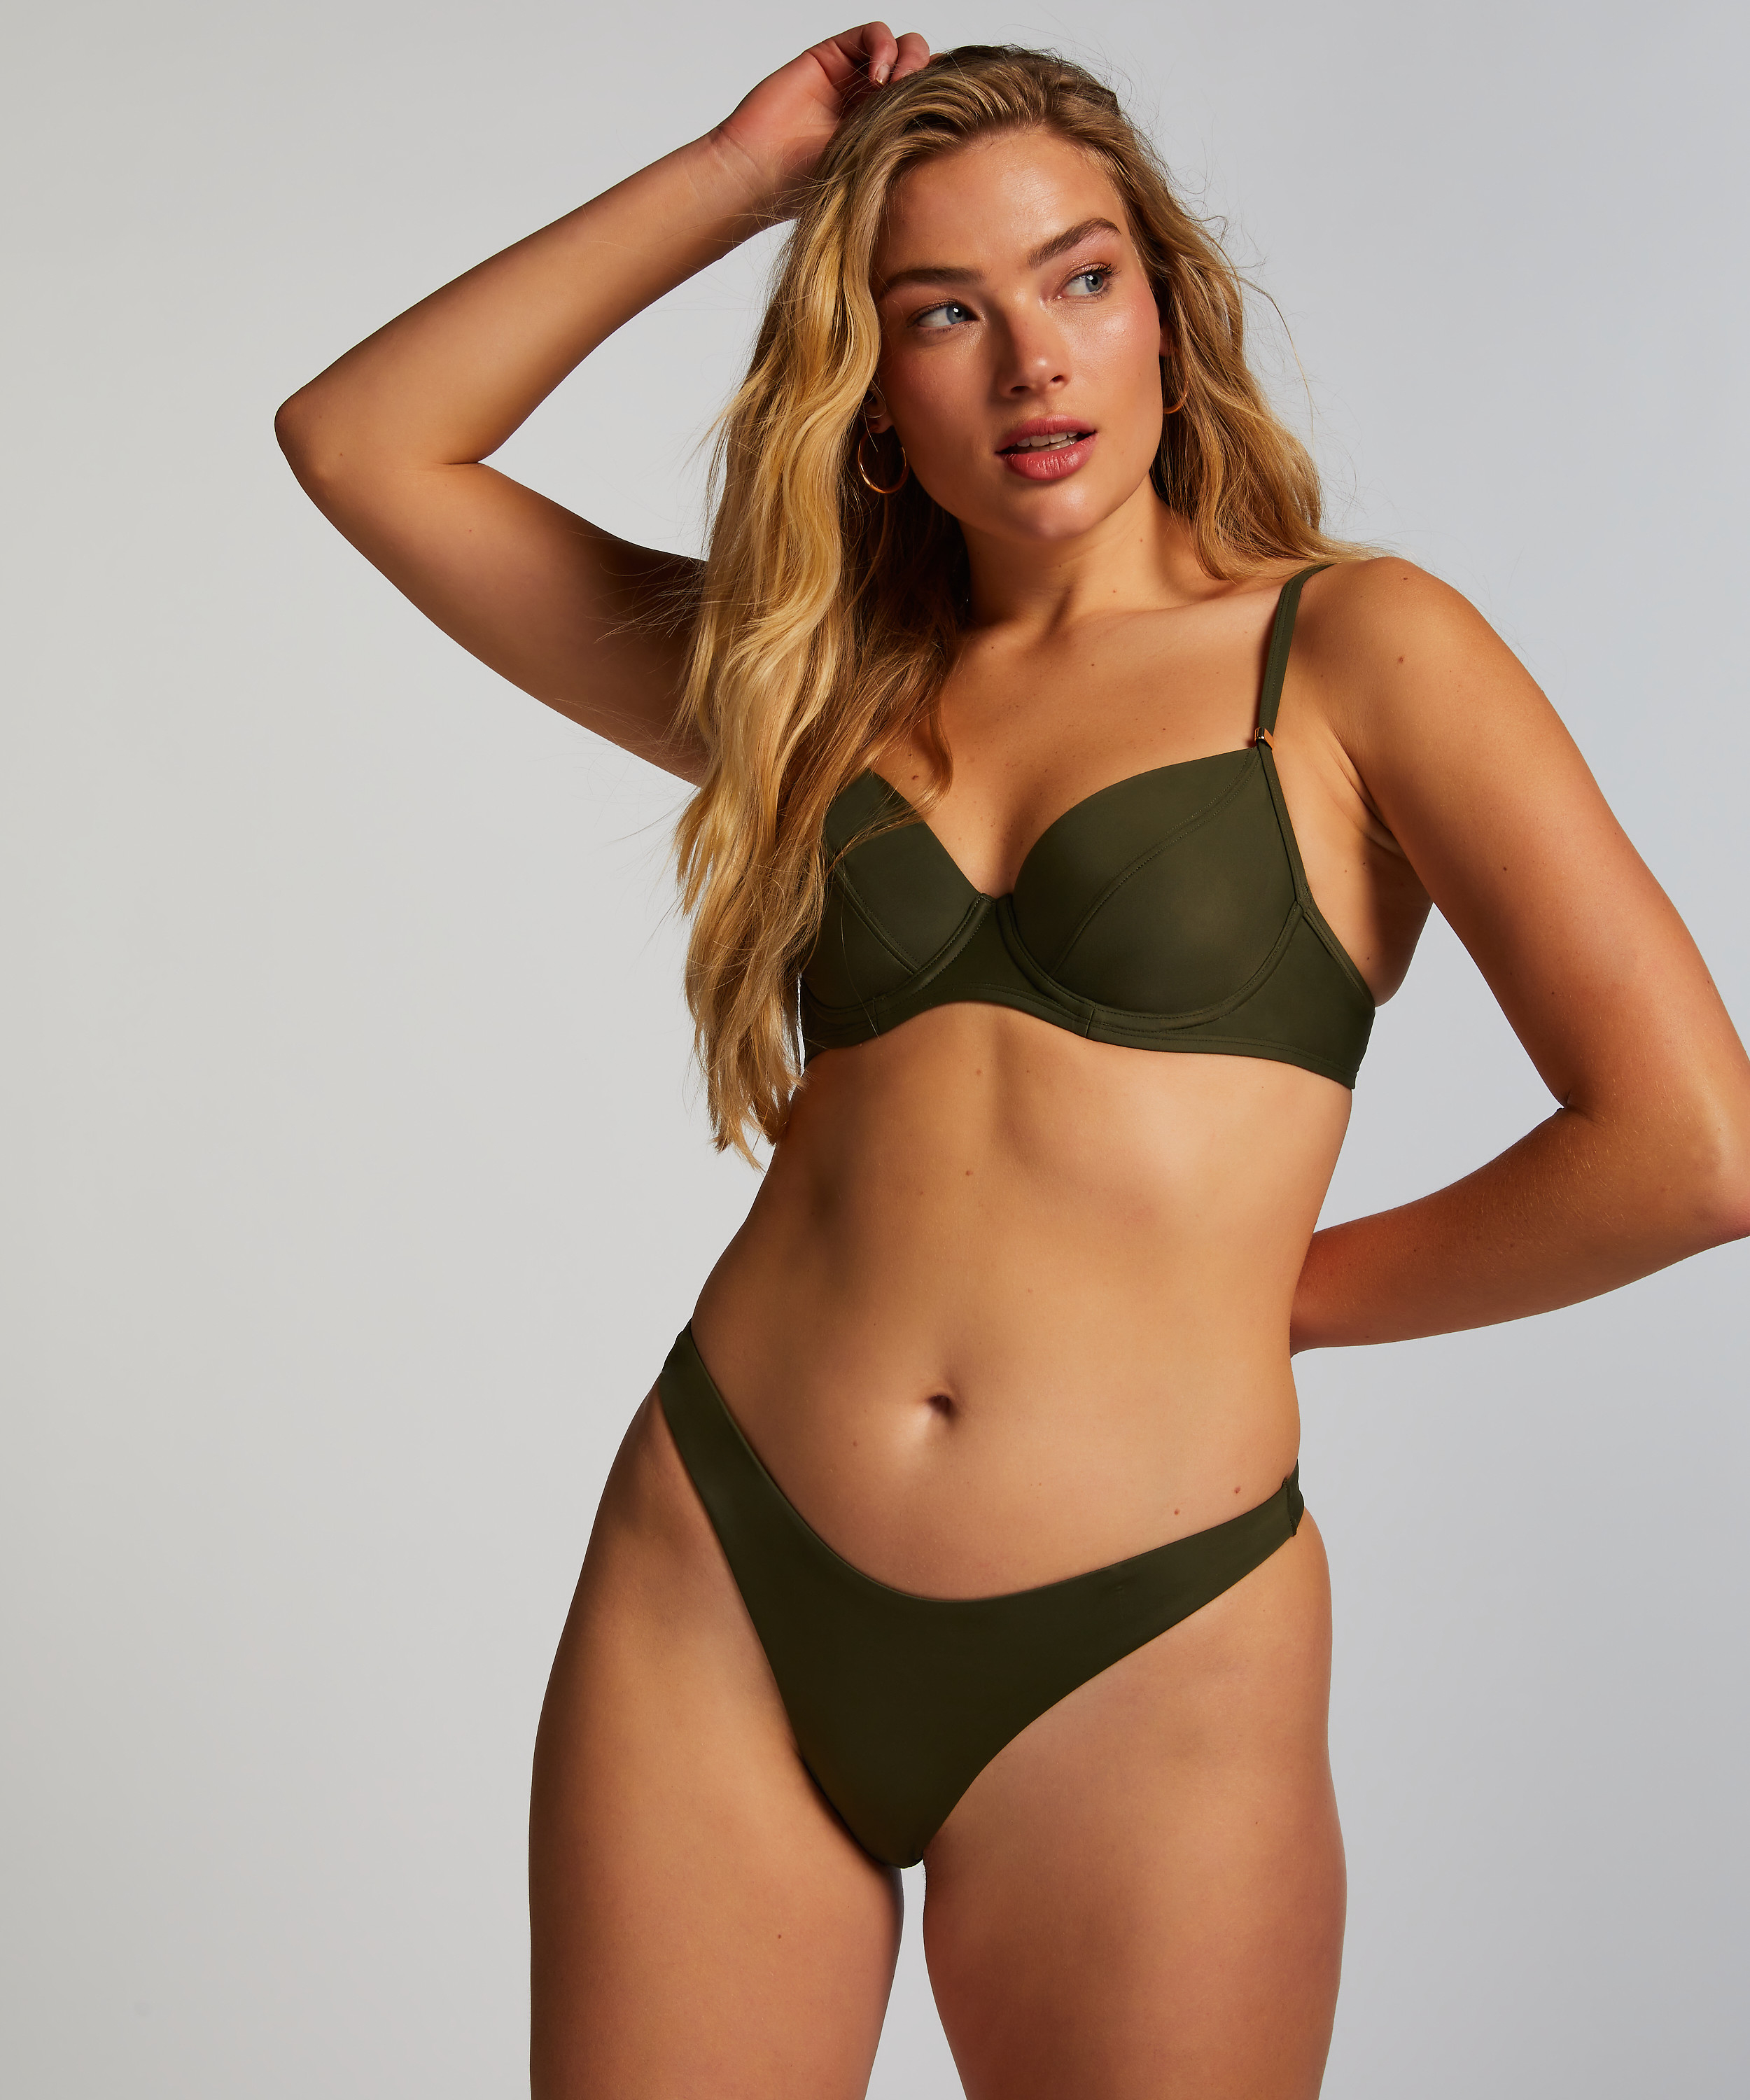 Højskåret Bikinitrusse Luxe, grøn, main